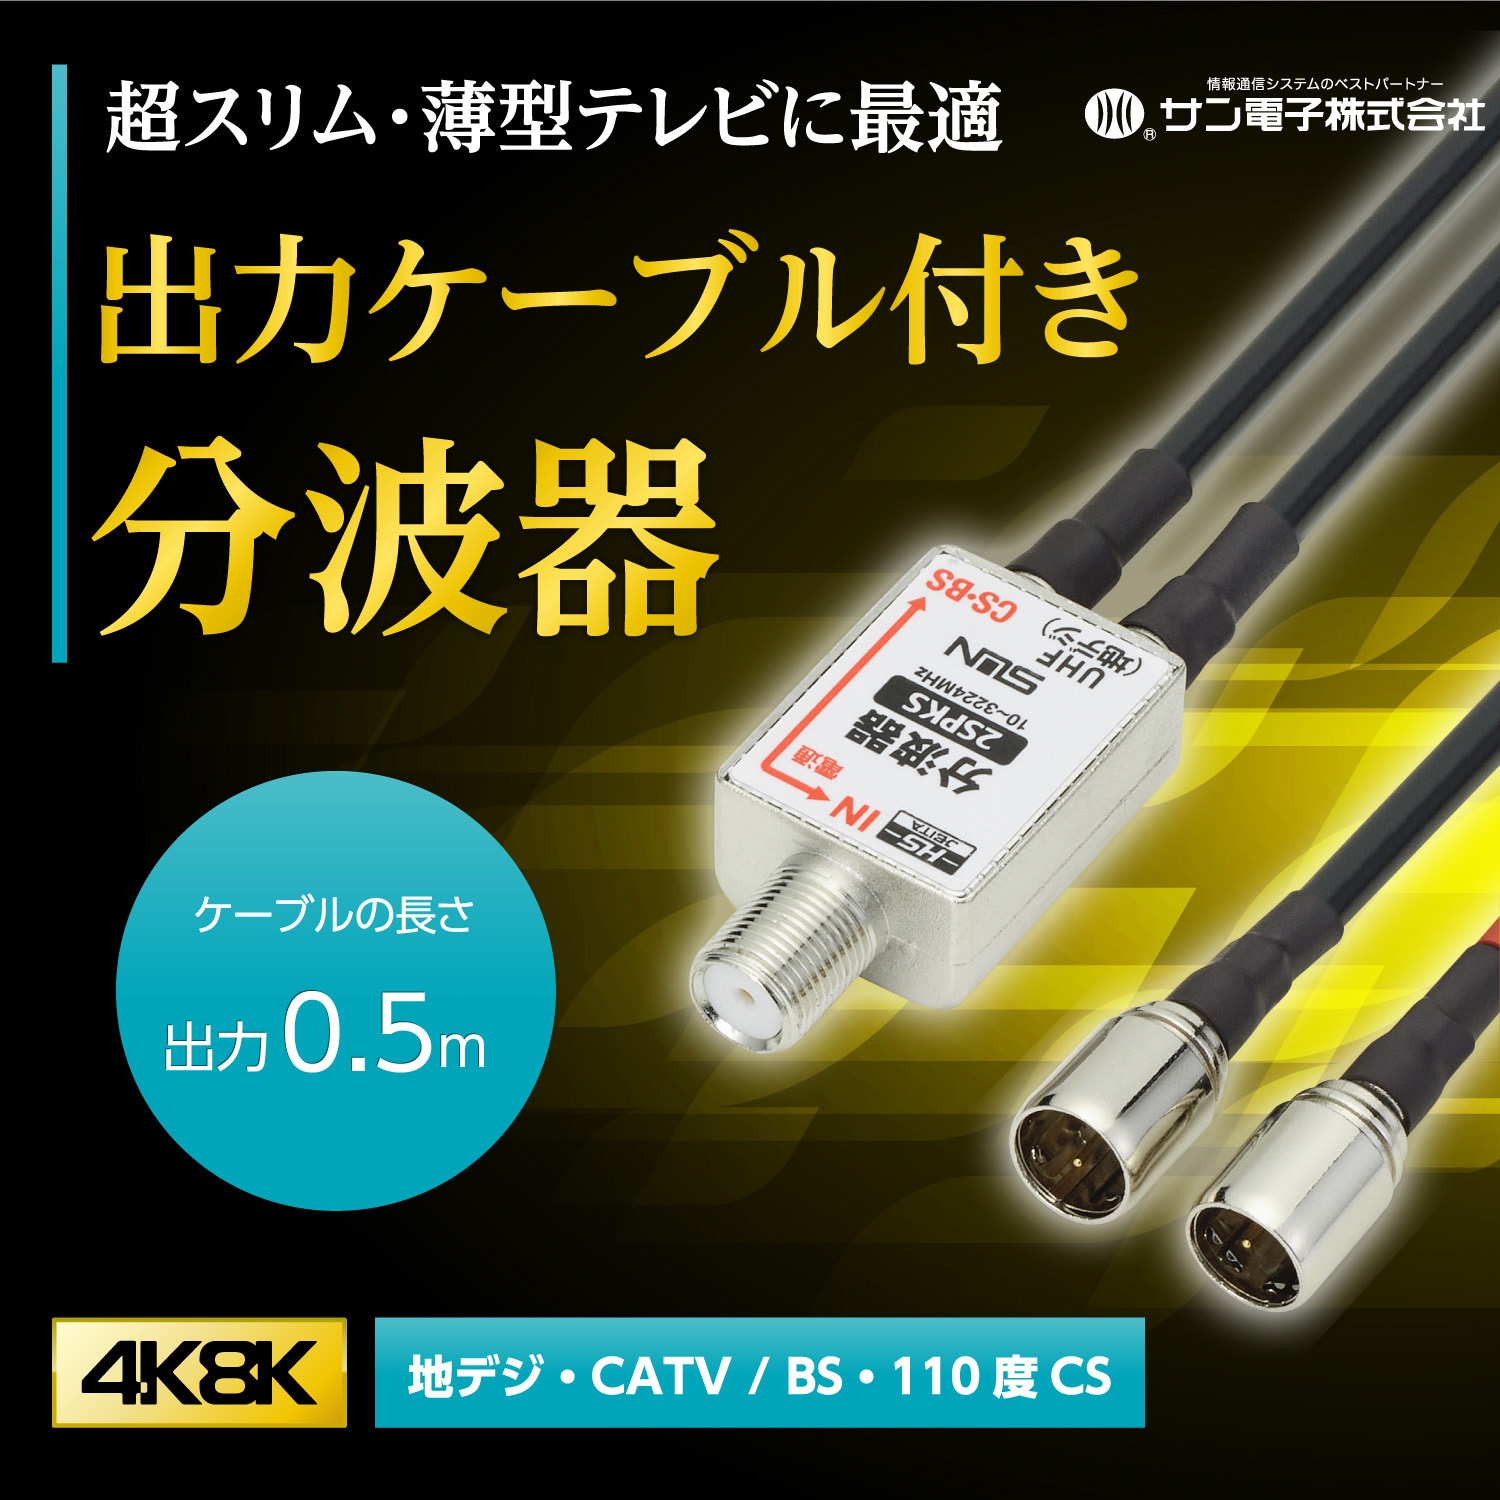 4K8K対応アンテナケーブル 1.5m 極細S-2.5C-FB 映像機器